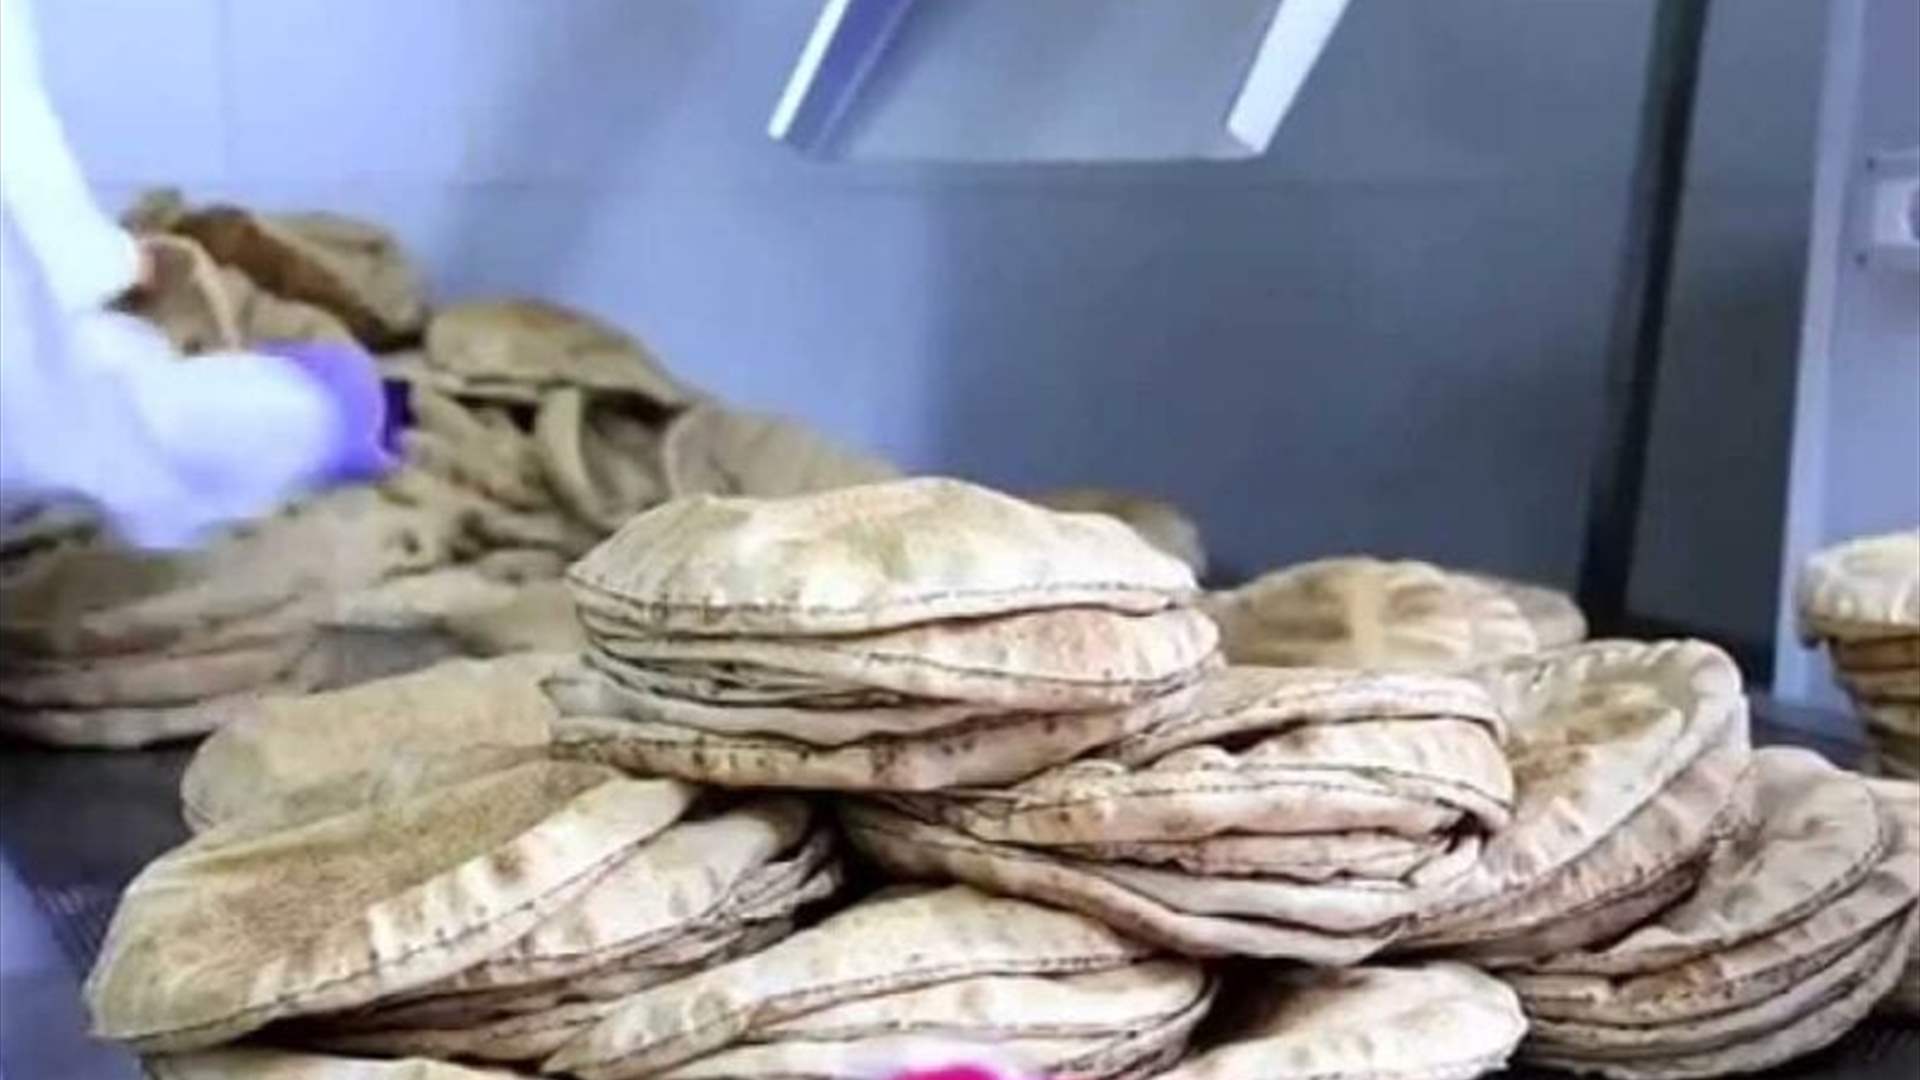 ارتفاع سعر ربطة الخبز الف ليرة يعود لارتفاع تسعير الطحين المدعوم